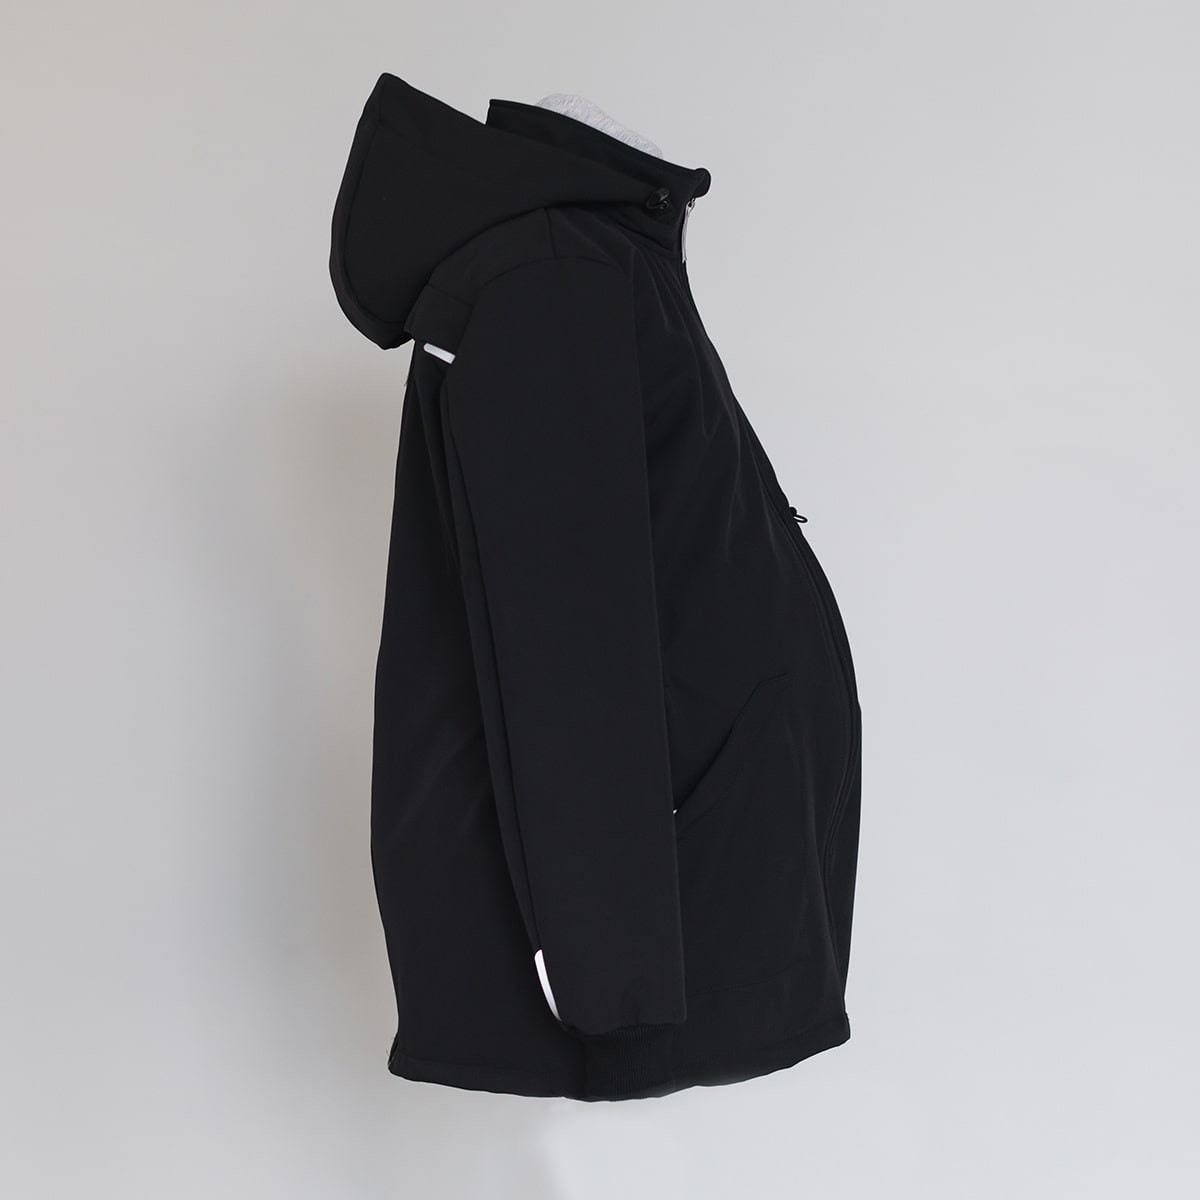 Manteau de portage 4 en 1 imperméable Noir de Momawo (nouvelle version) -  Veste et manteau de portage Momawo MWC-01-BLKS - Bébéluga